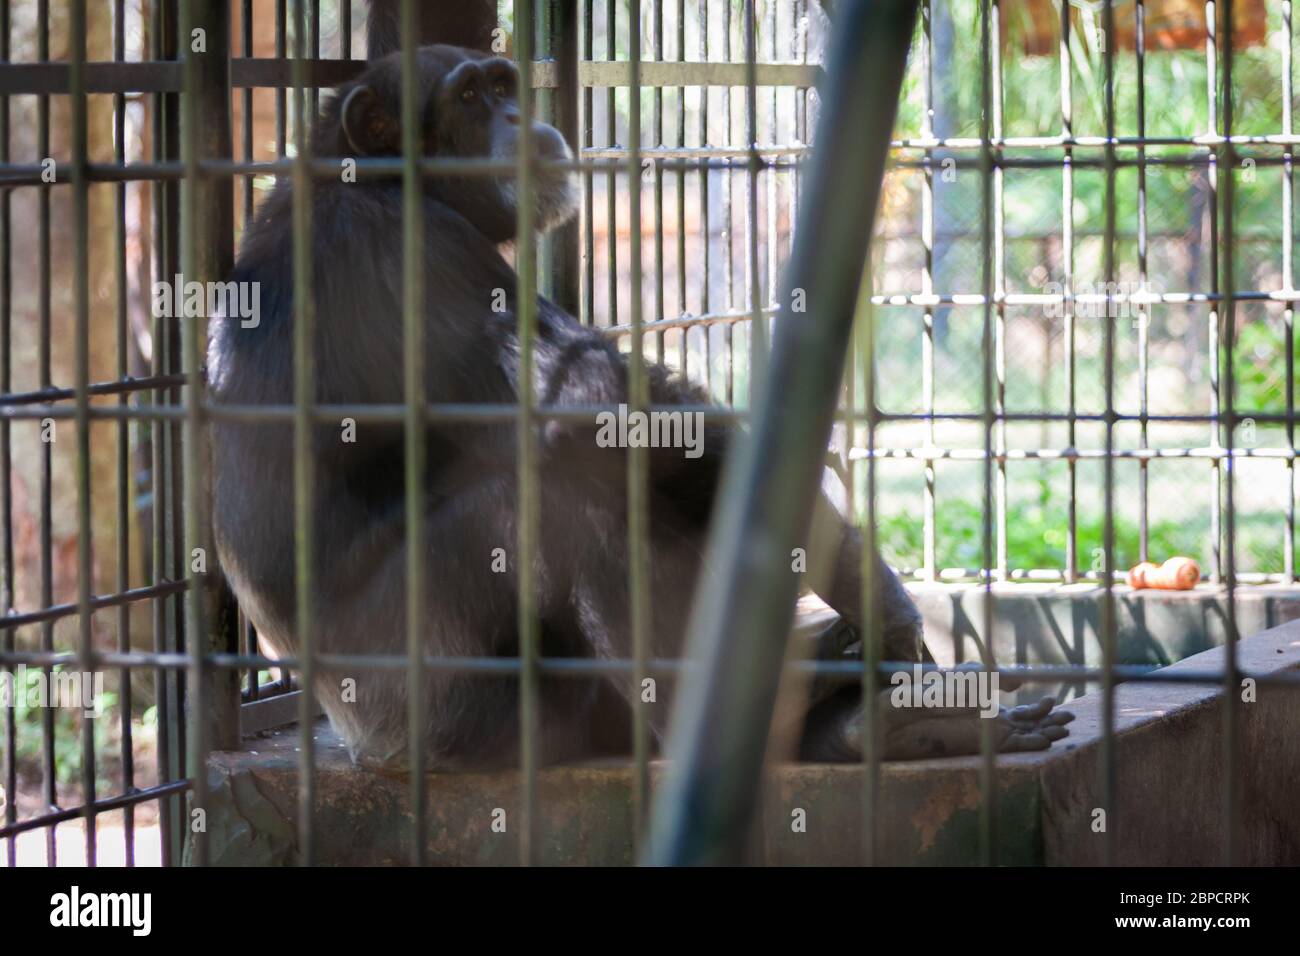 Asuncion, Paraguay. 26th April, 2008. Common chimpanzee (Pan troglodytes) sits on concrete behind bars, inside its enclosure at Asuncion Zoo, Paraguay. Stock Photo